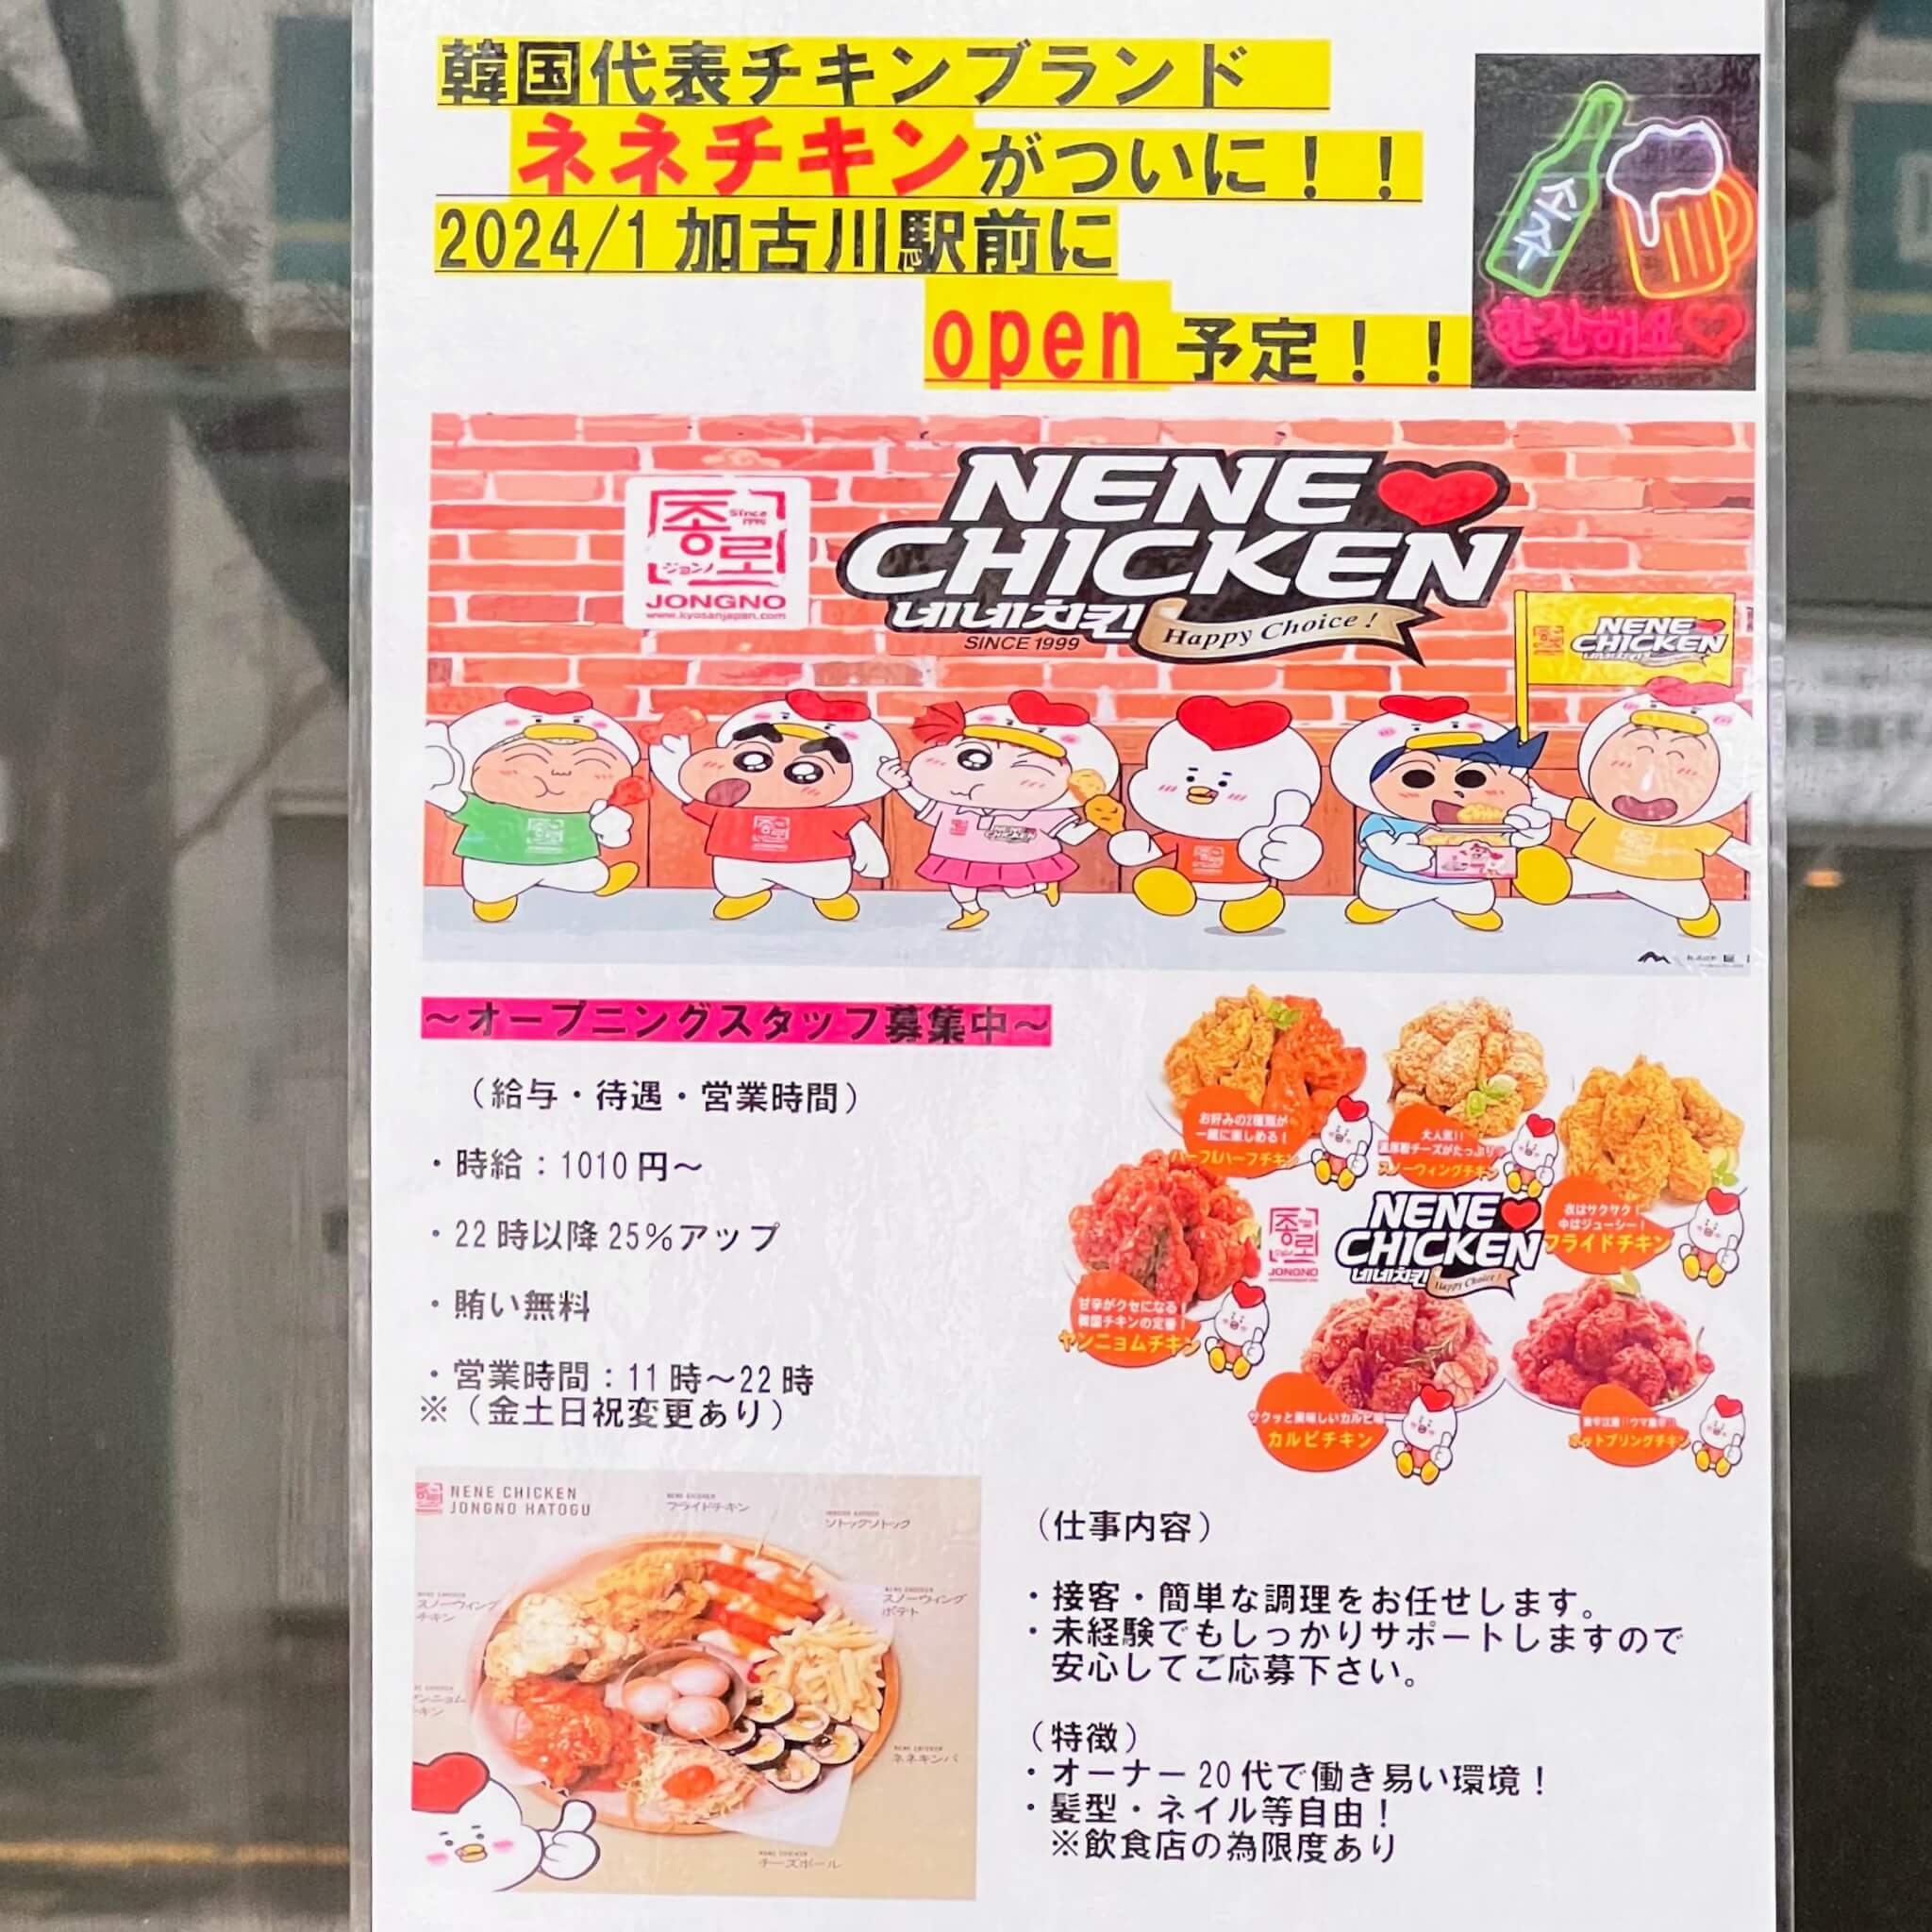 ネネチキン加古川駅前店のオープン告知とオープニングスタッフ募集のお知らせ